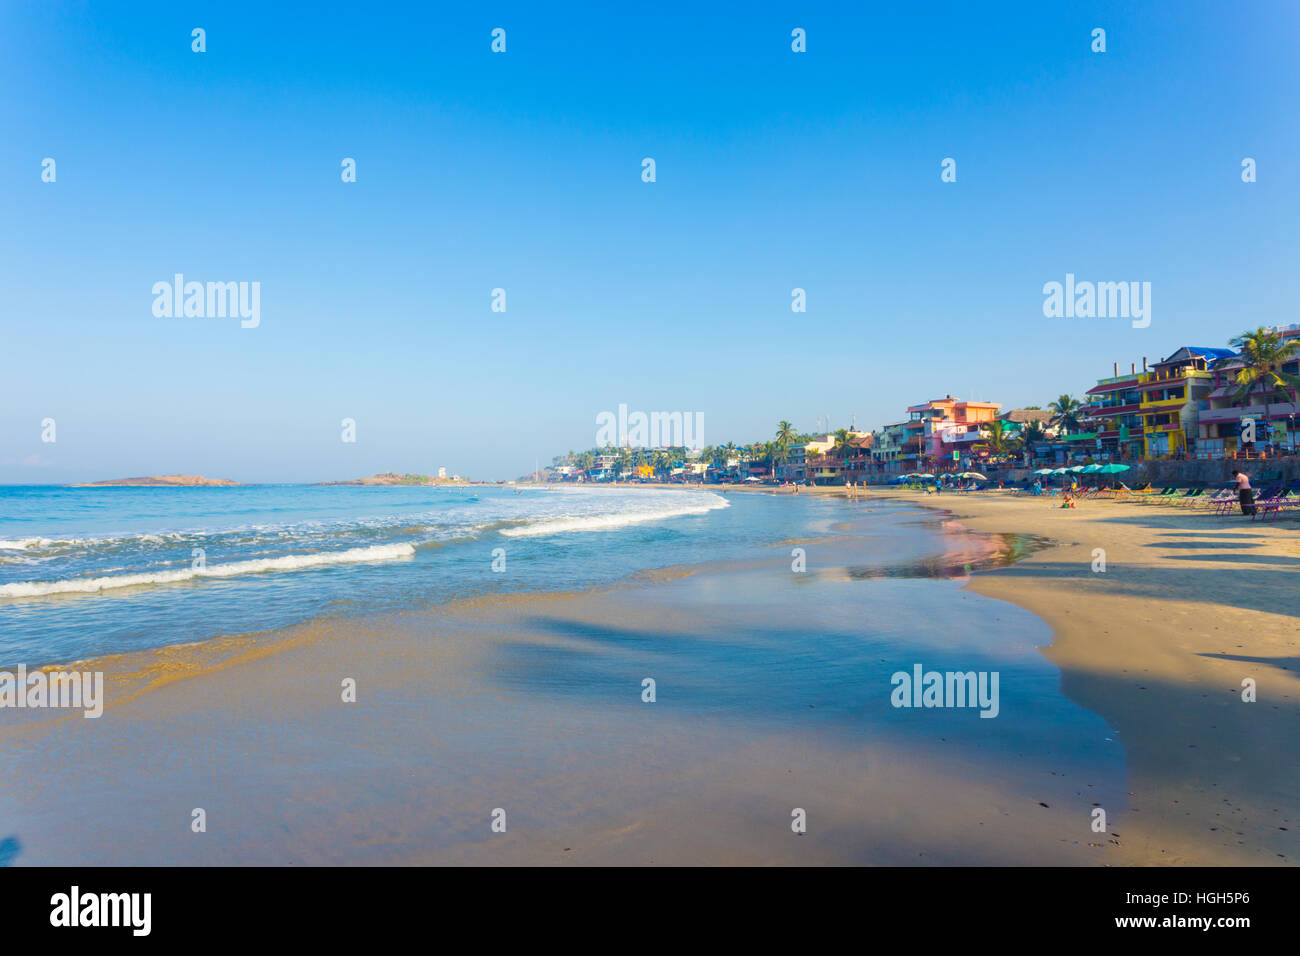 Linea Hotel waterfront sopra la spiaggia di sabbia e le onde del mare in una città turistica in Kerala, India. Posizione orizzontale Foto Stock